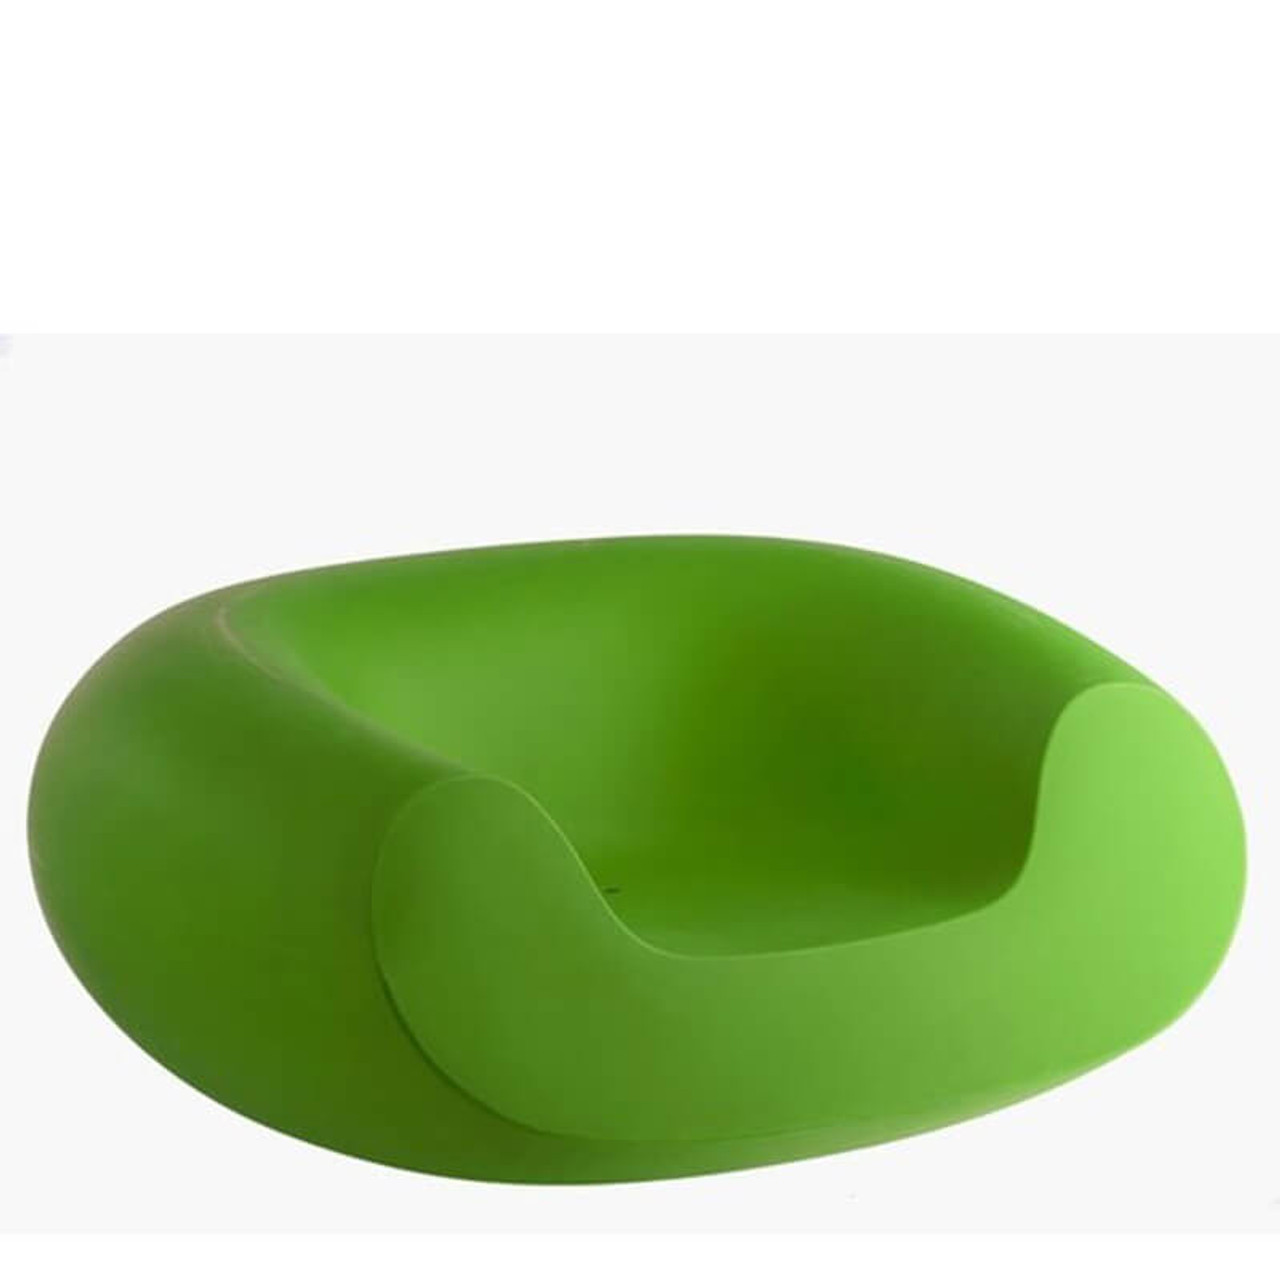 chubby armchair green